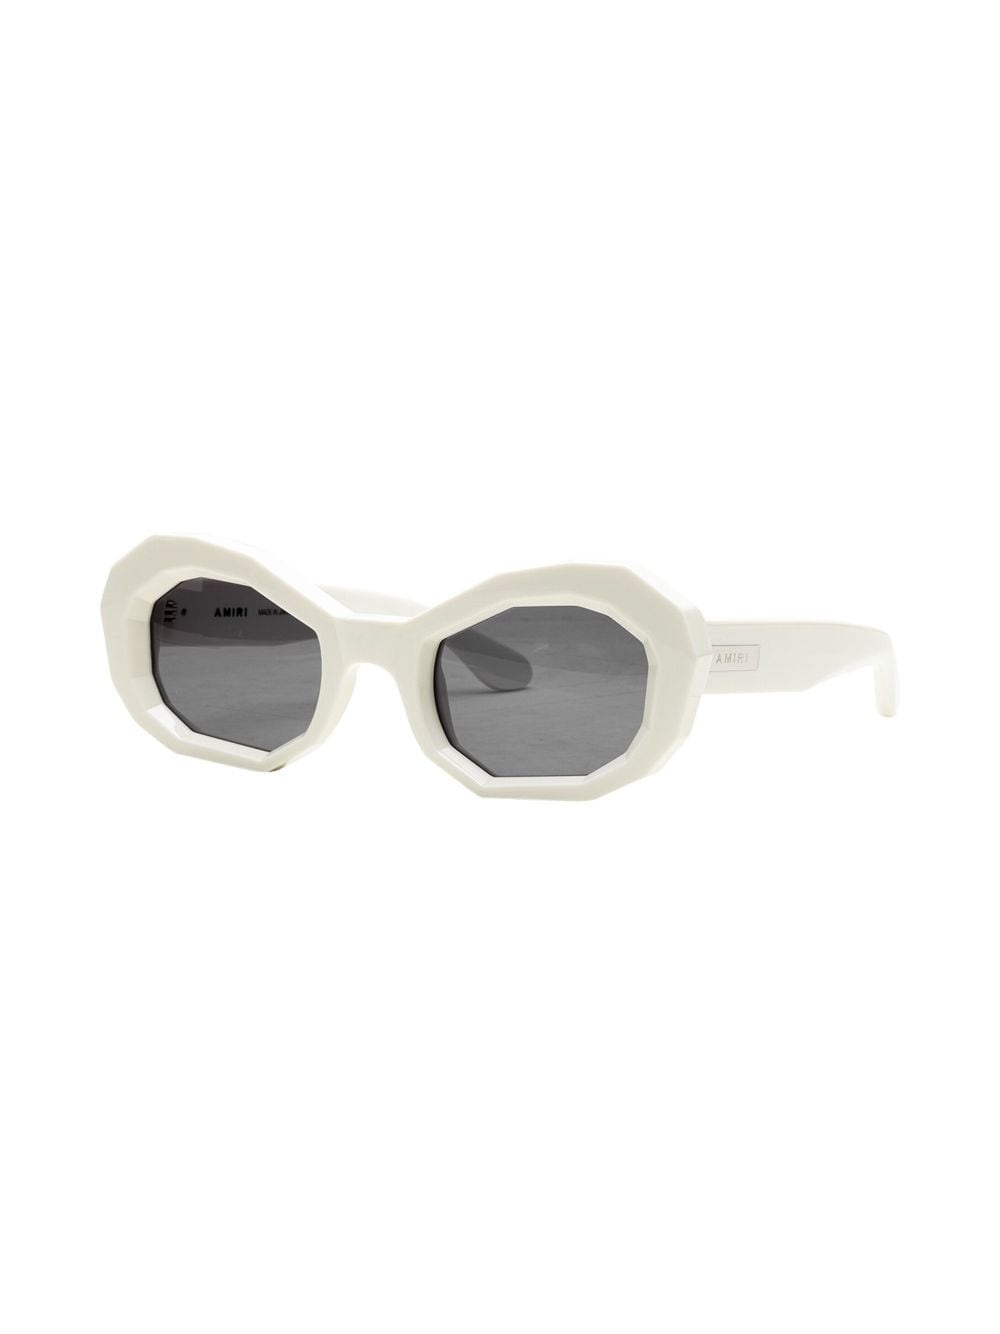 Honeycomb "White" sunglasses - 2